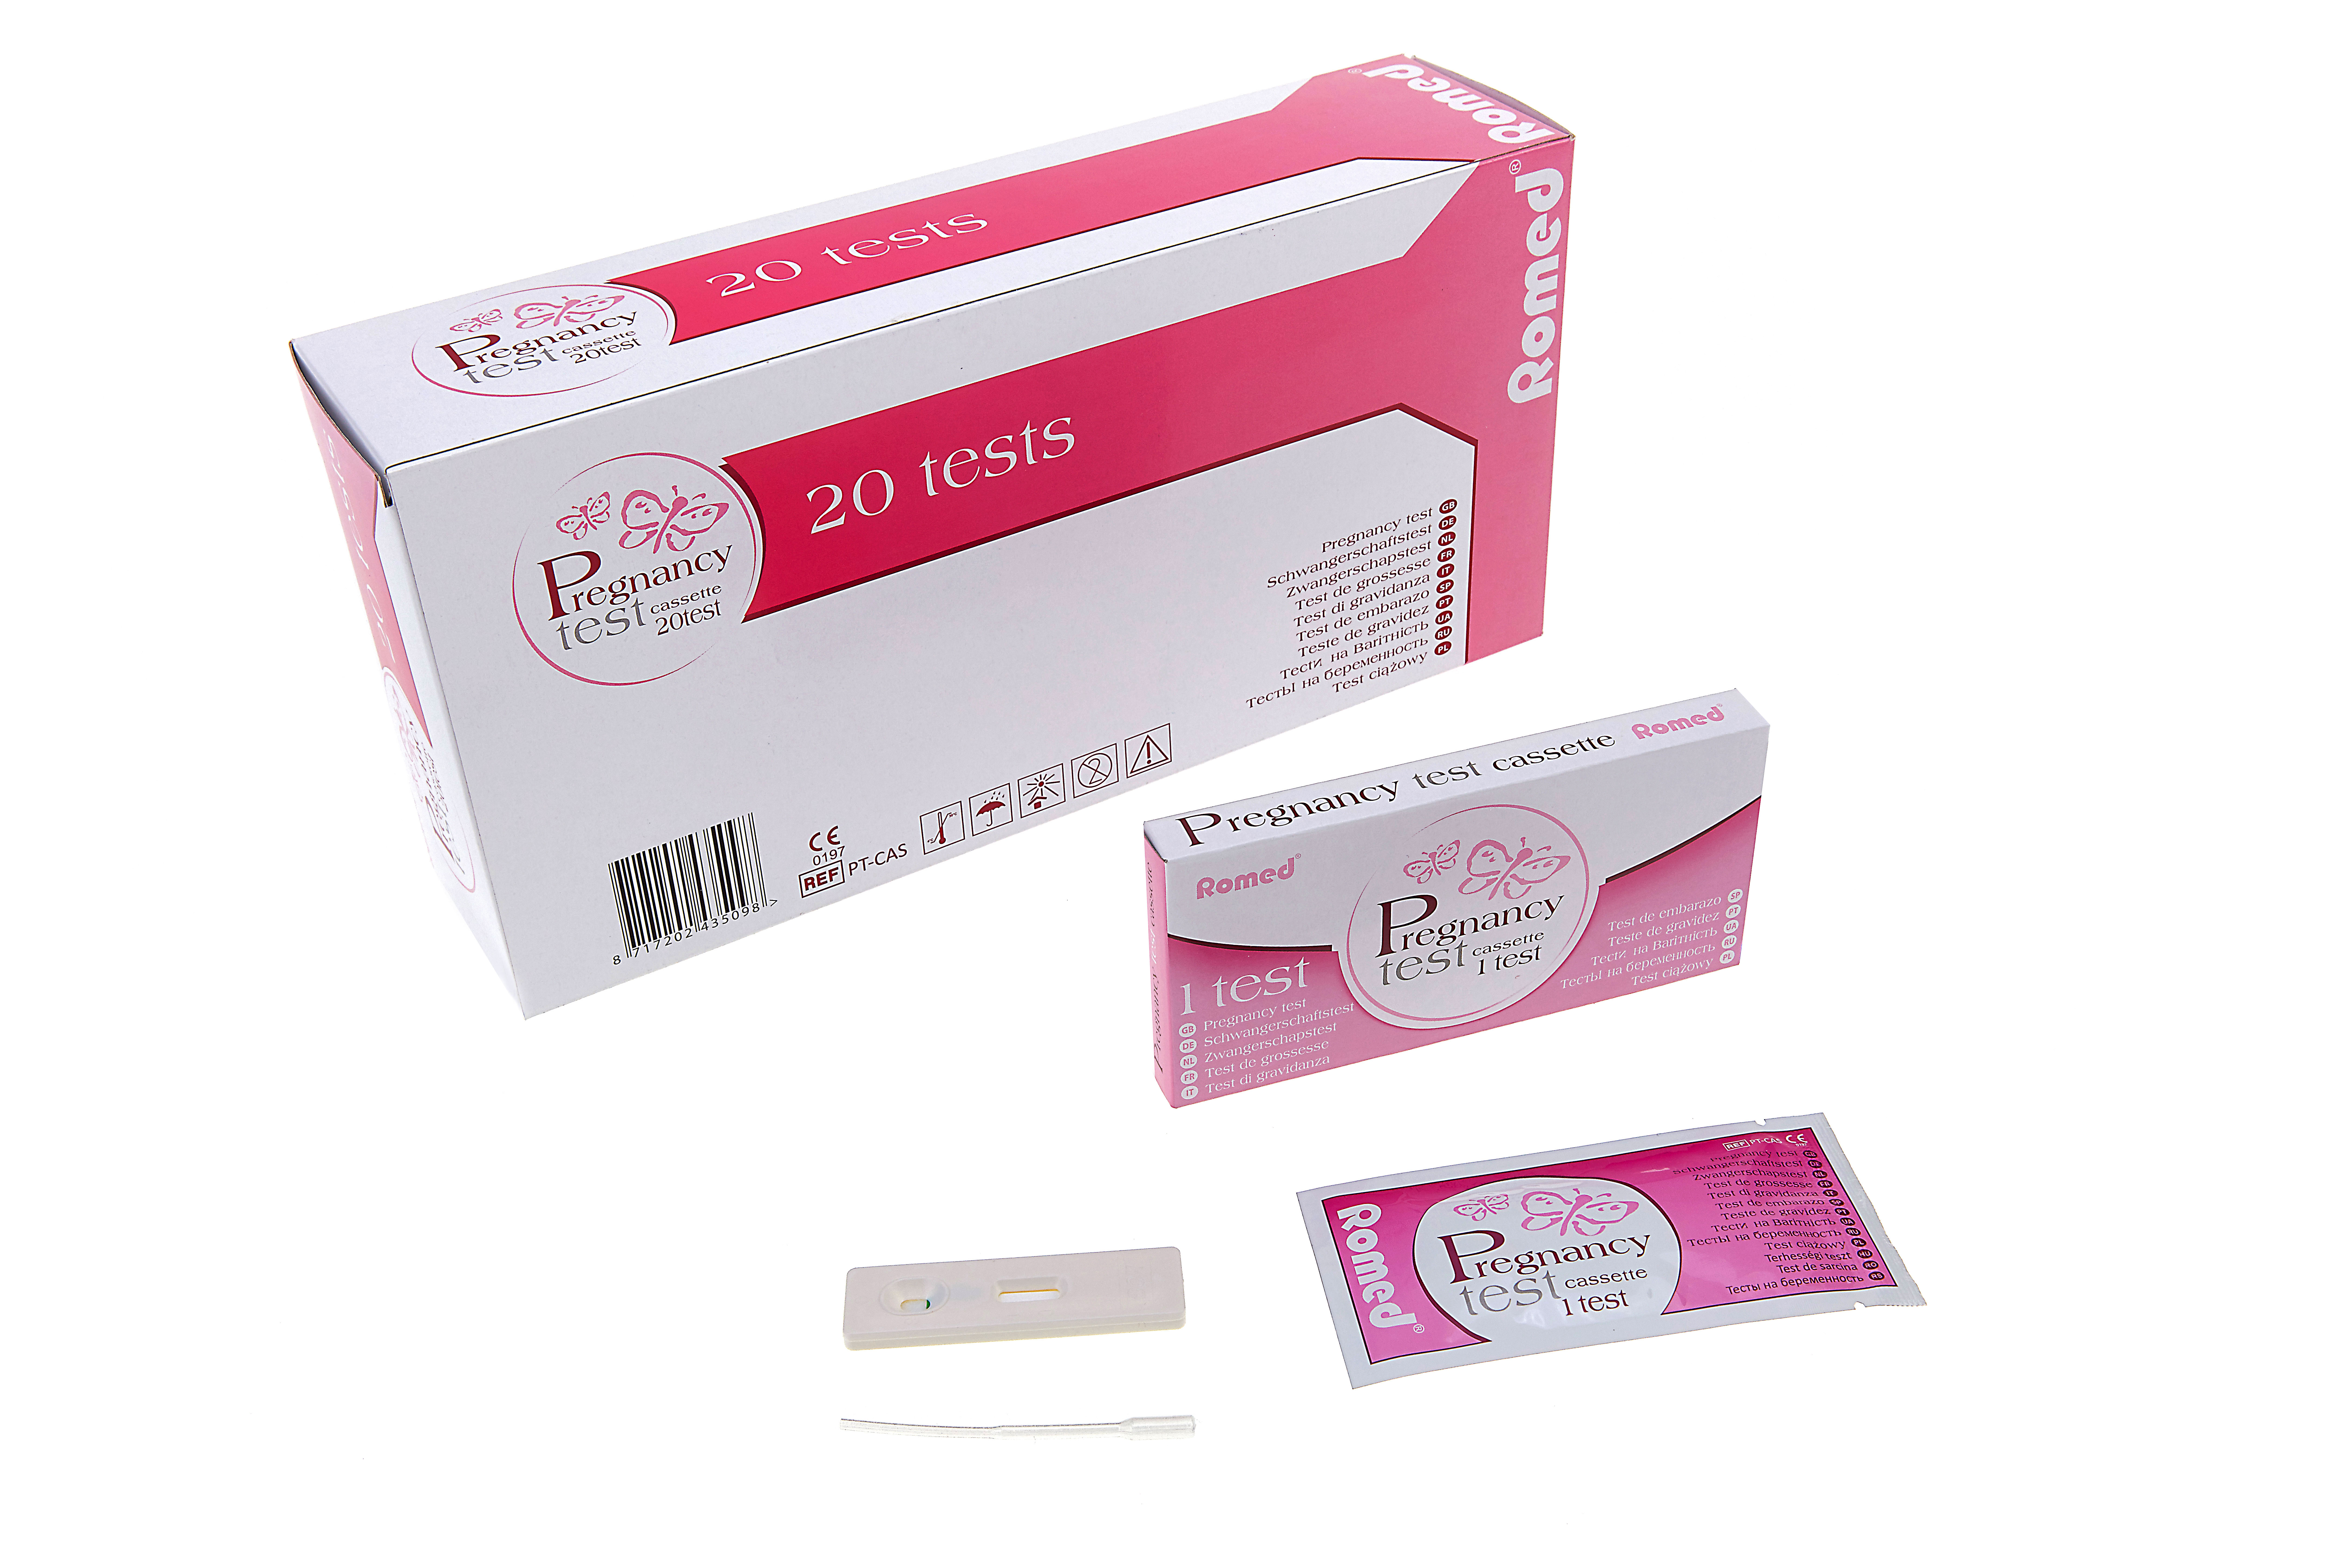 PT-CAS Tests de embarazo Romed, tipo cartucho, empaquetados unitariamente en una caja, por 20 unidades en una caja intermedia, 25 x 20 unidades = 500 unidades en una caja de cartón.